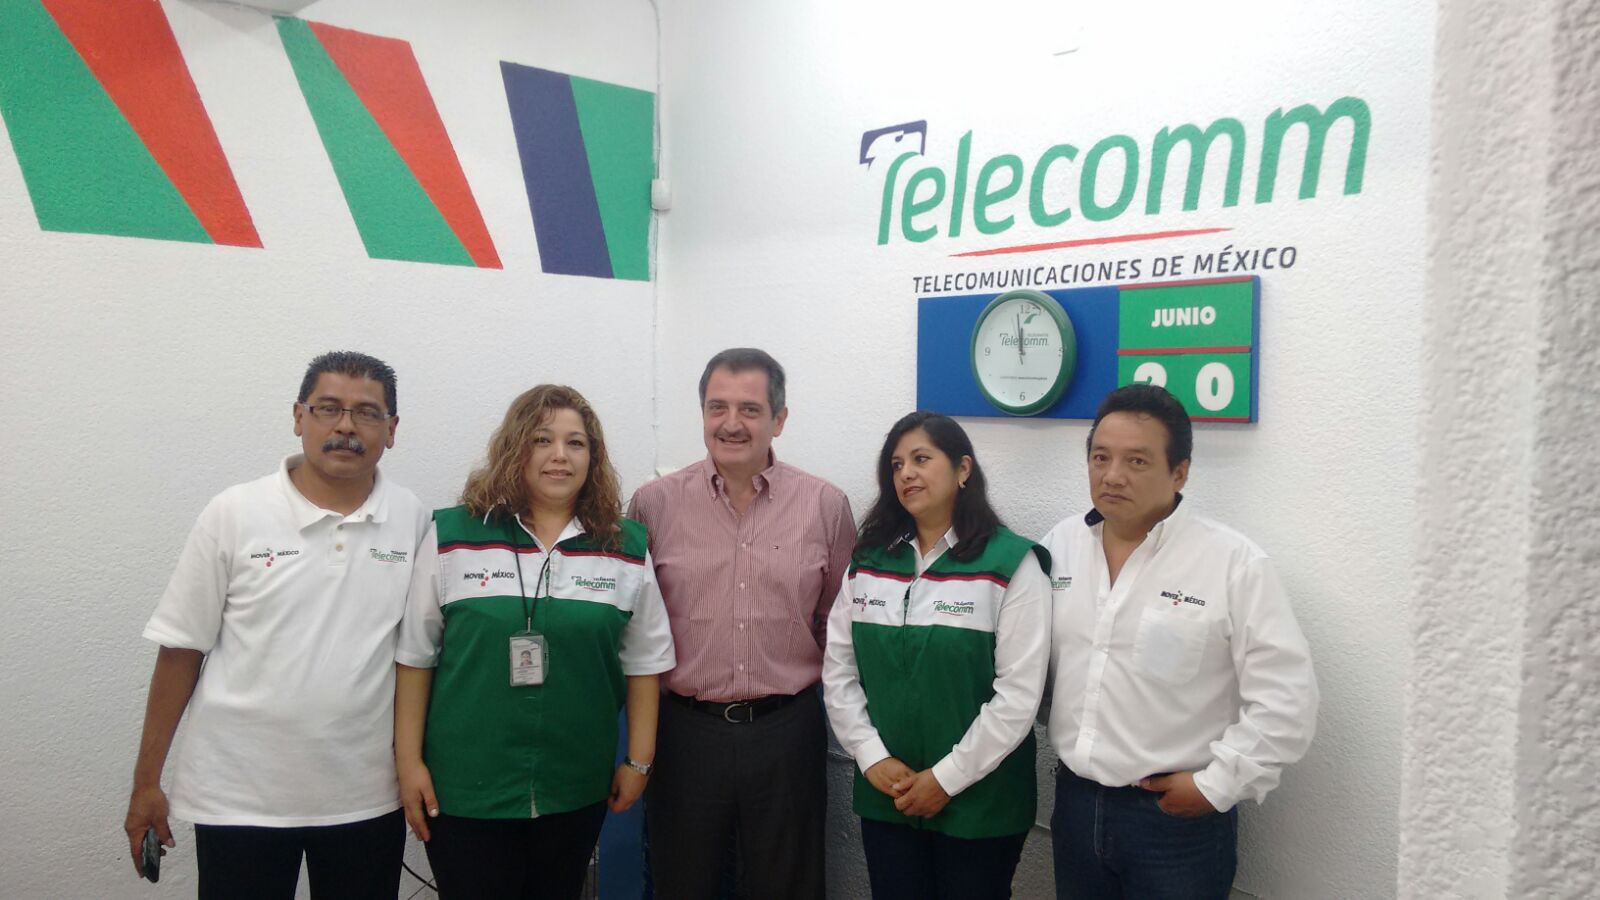 Telecom abrirá 68 nuevas sucursales en el país, anuncia su director